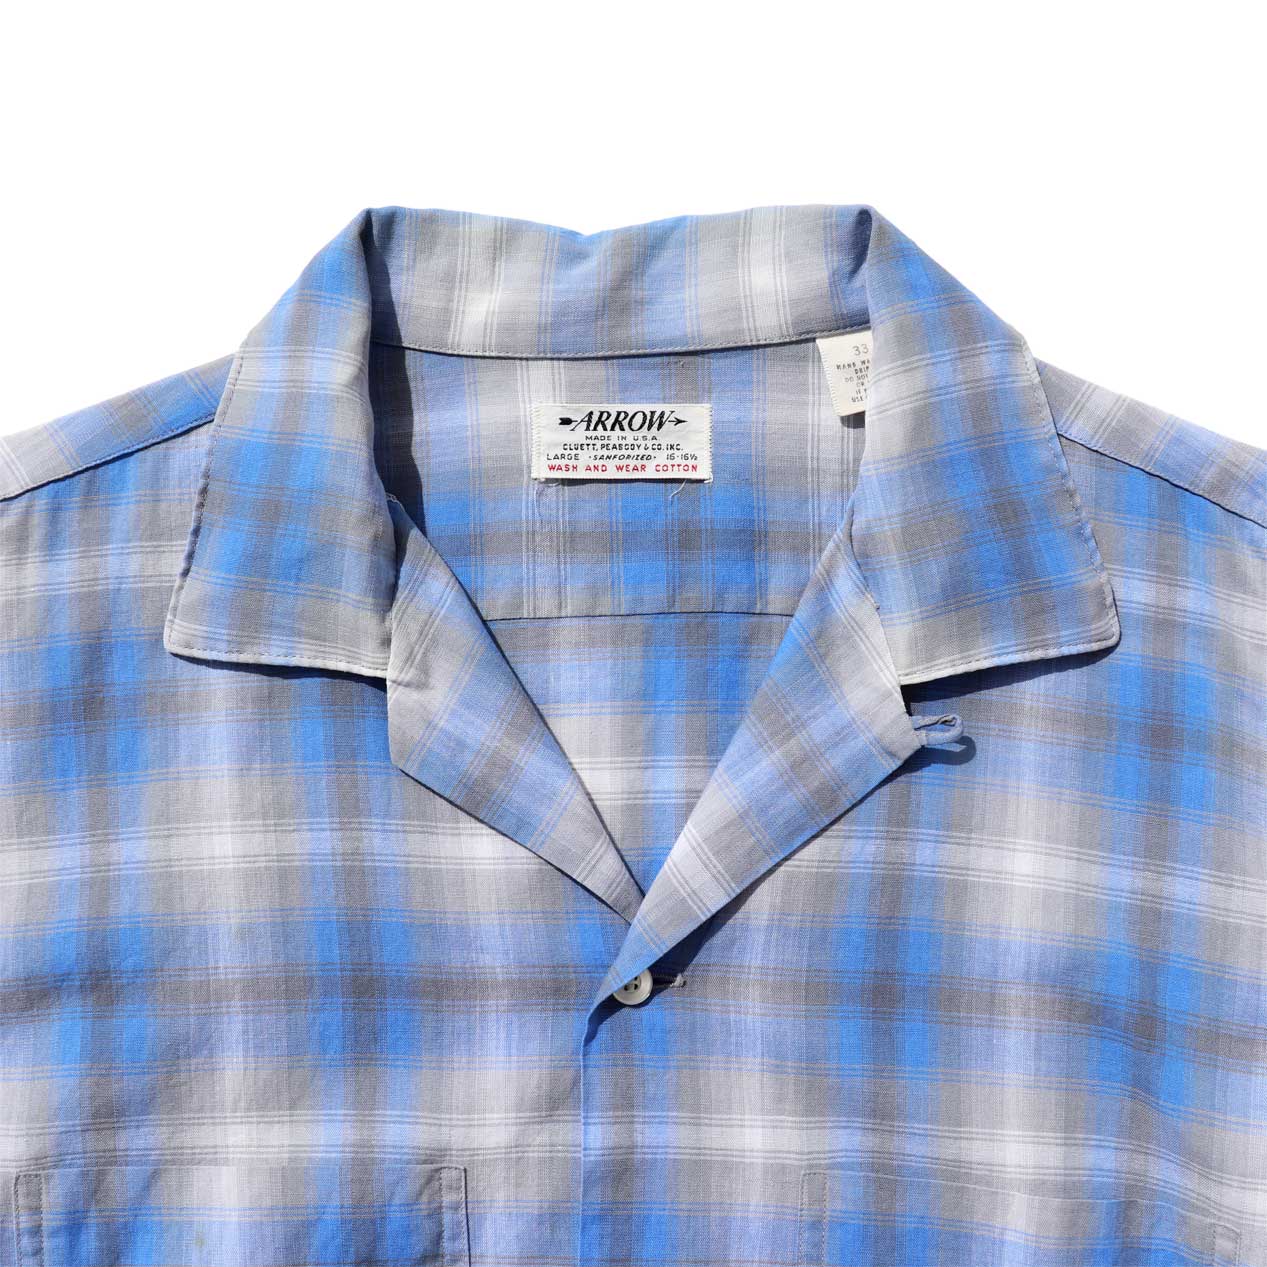 POST JUNK / 60's ARROW All Cotton Ombre Check Open Collar Shirt